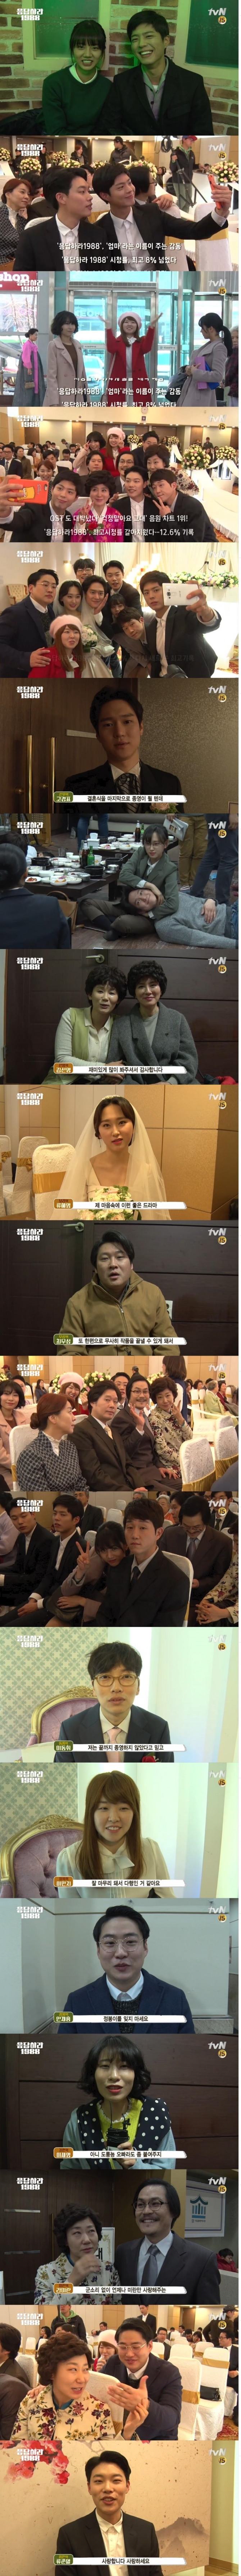 [마지막 이야기] 굿바이, 응답하라 1988 동영상이 18일 공개됐다./사진=tvN 방송 캡처